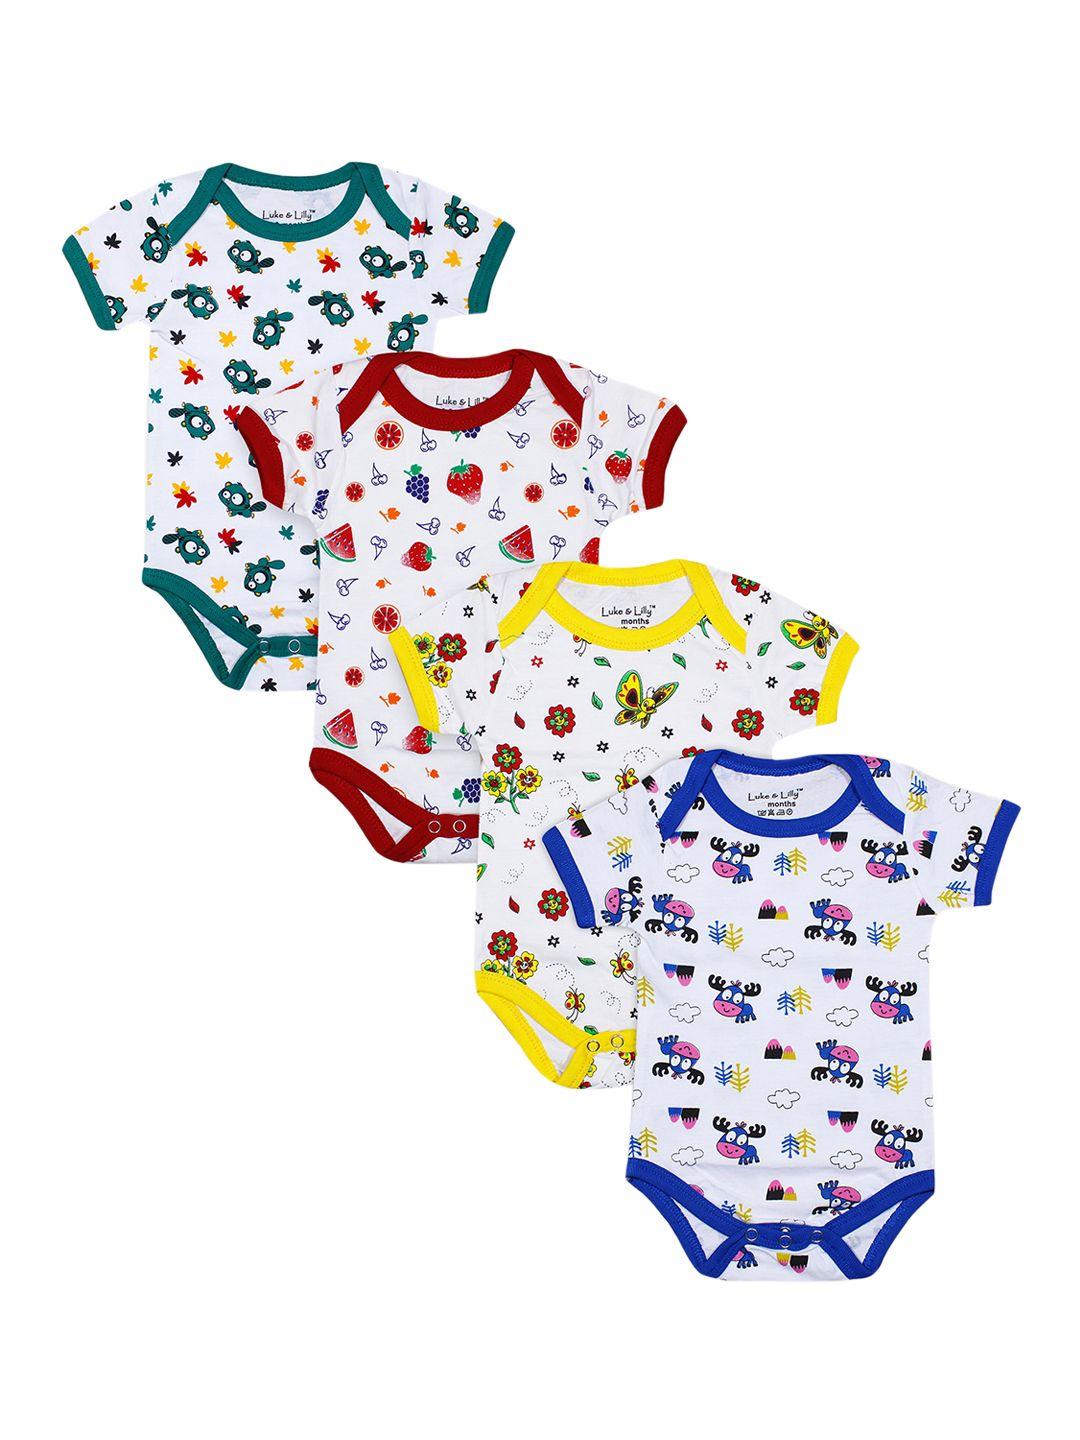 luke & lilly baby boys & baby girls multicolor bodysuit / romper